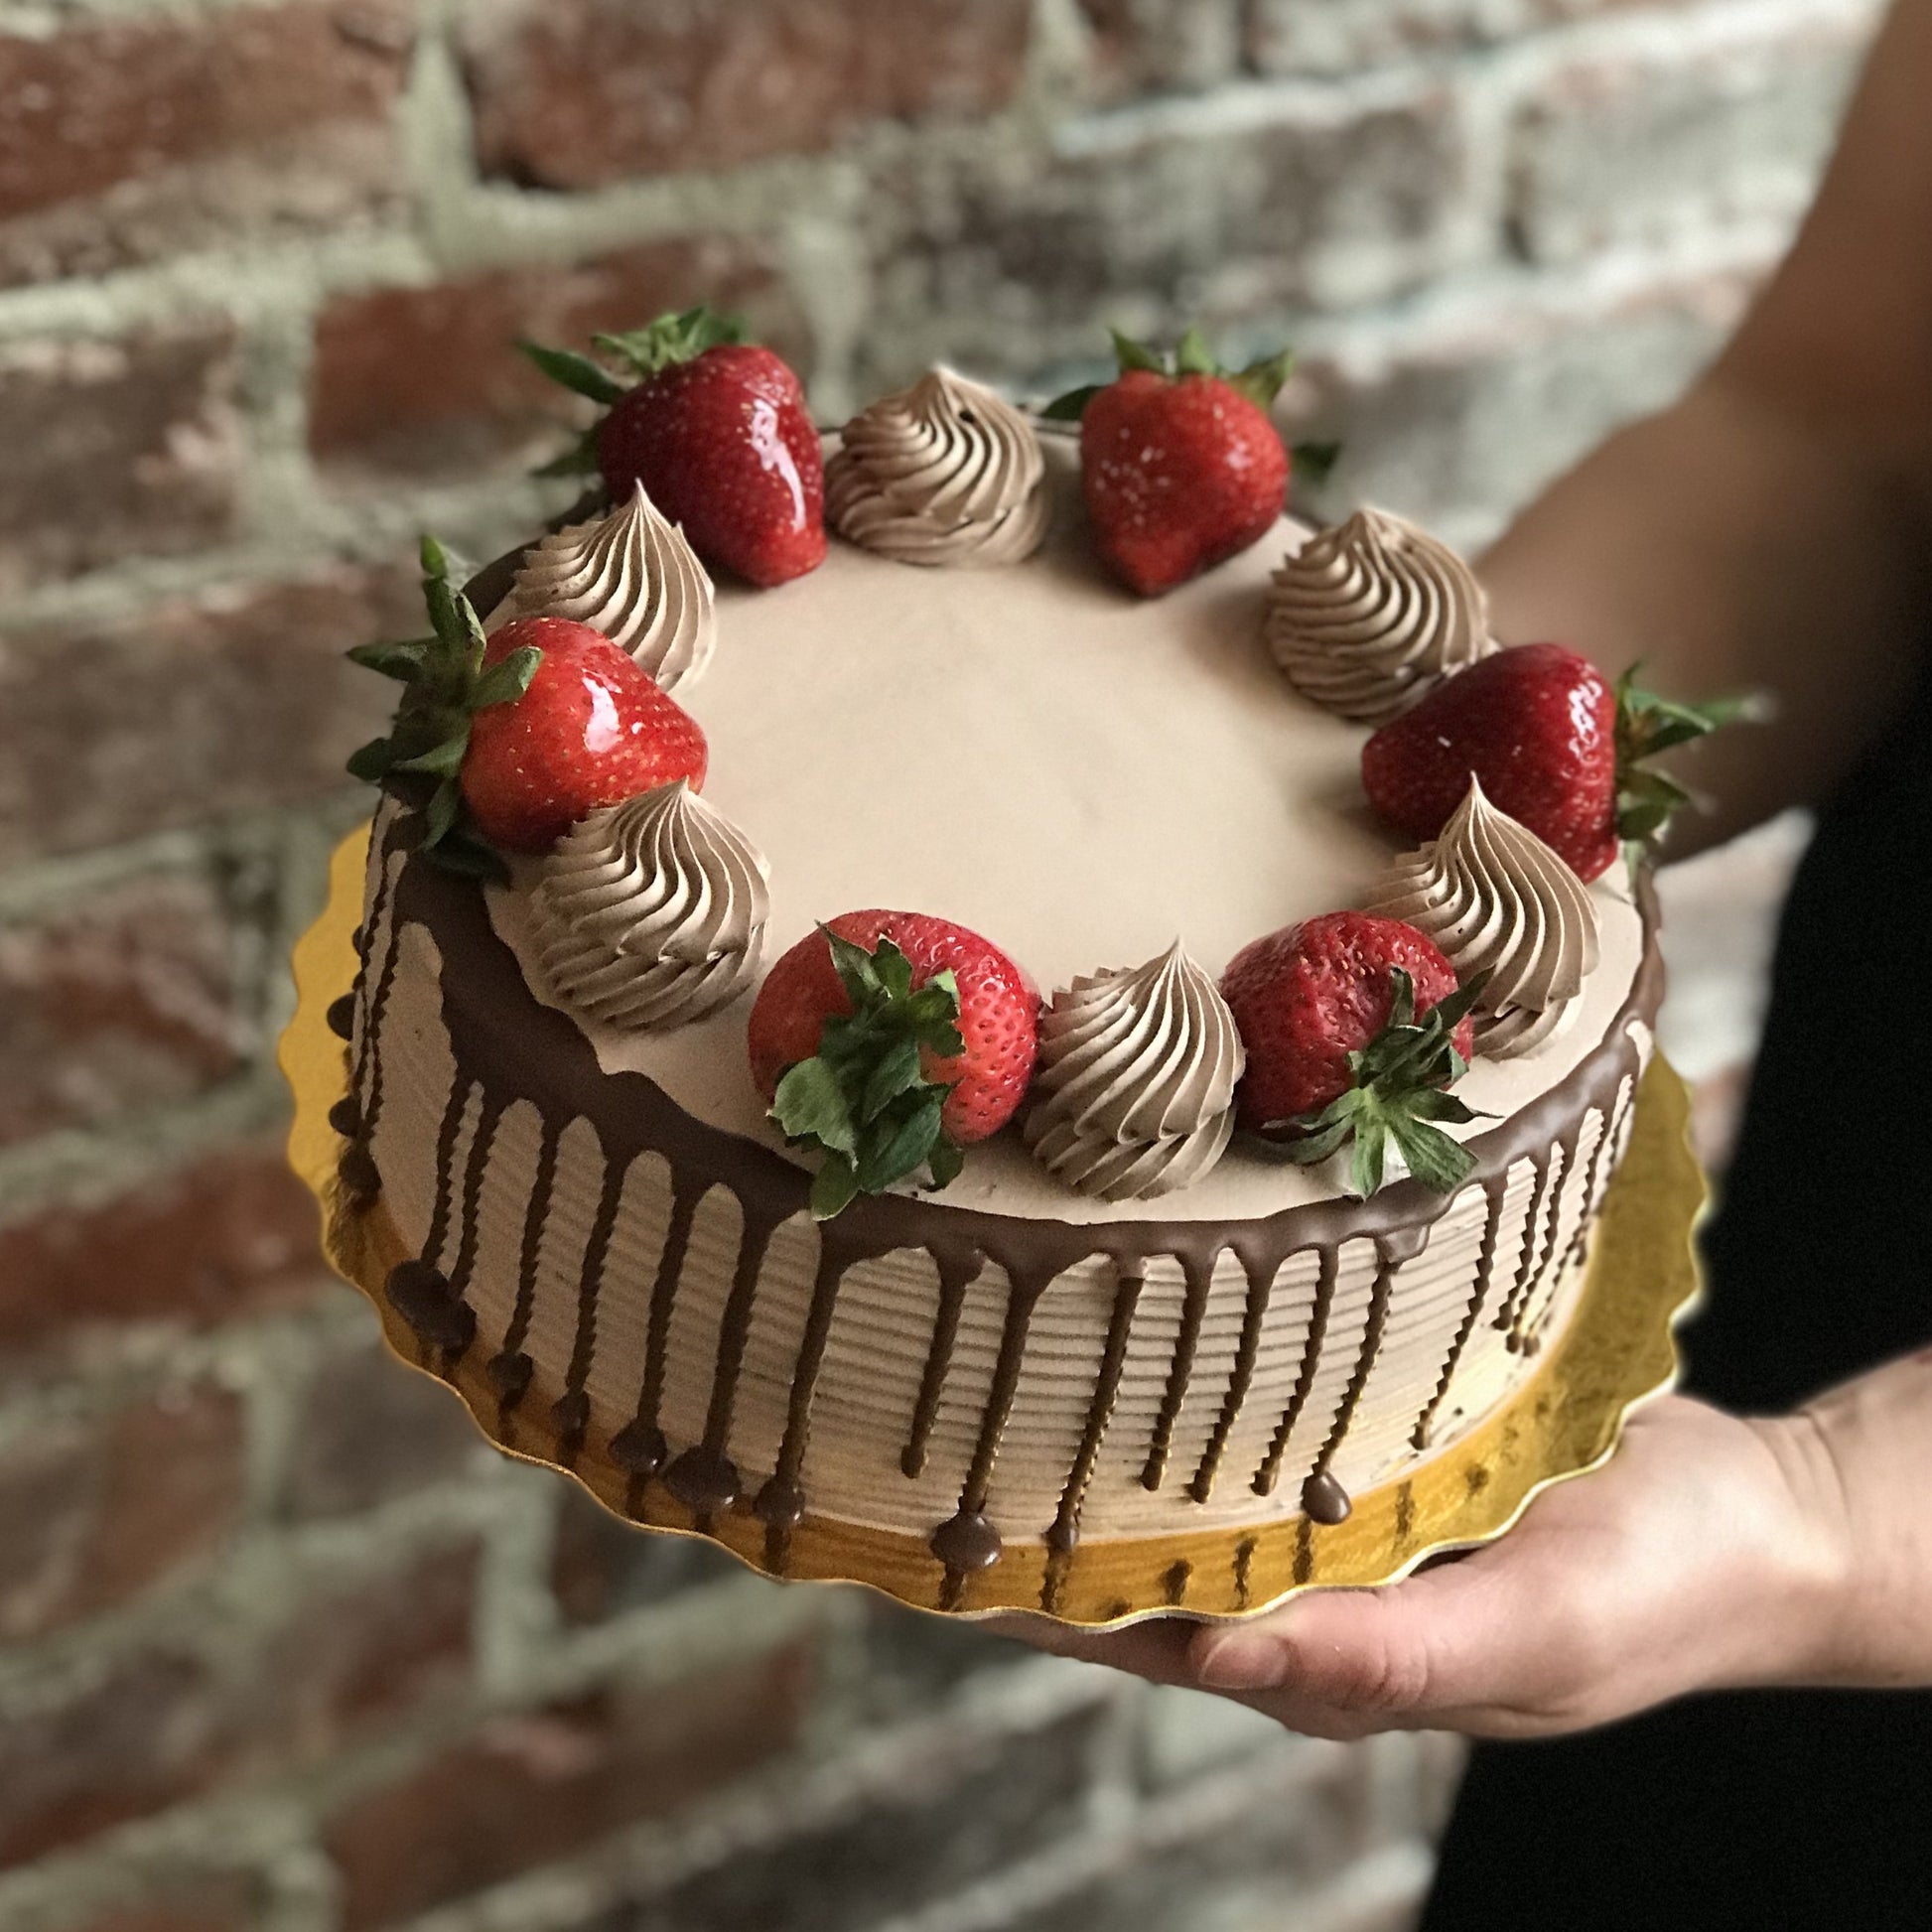 Chocolate cake with chocolate drip and fresh strawberries